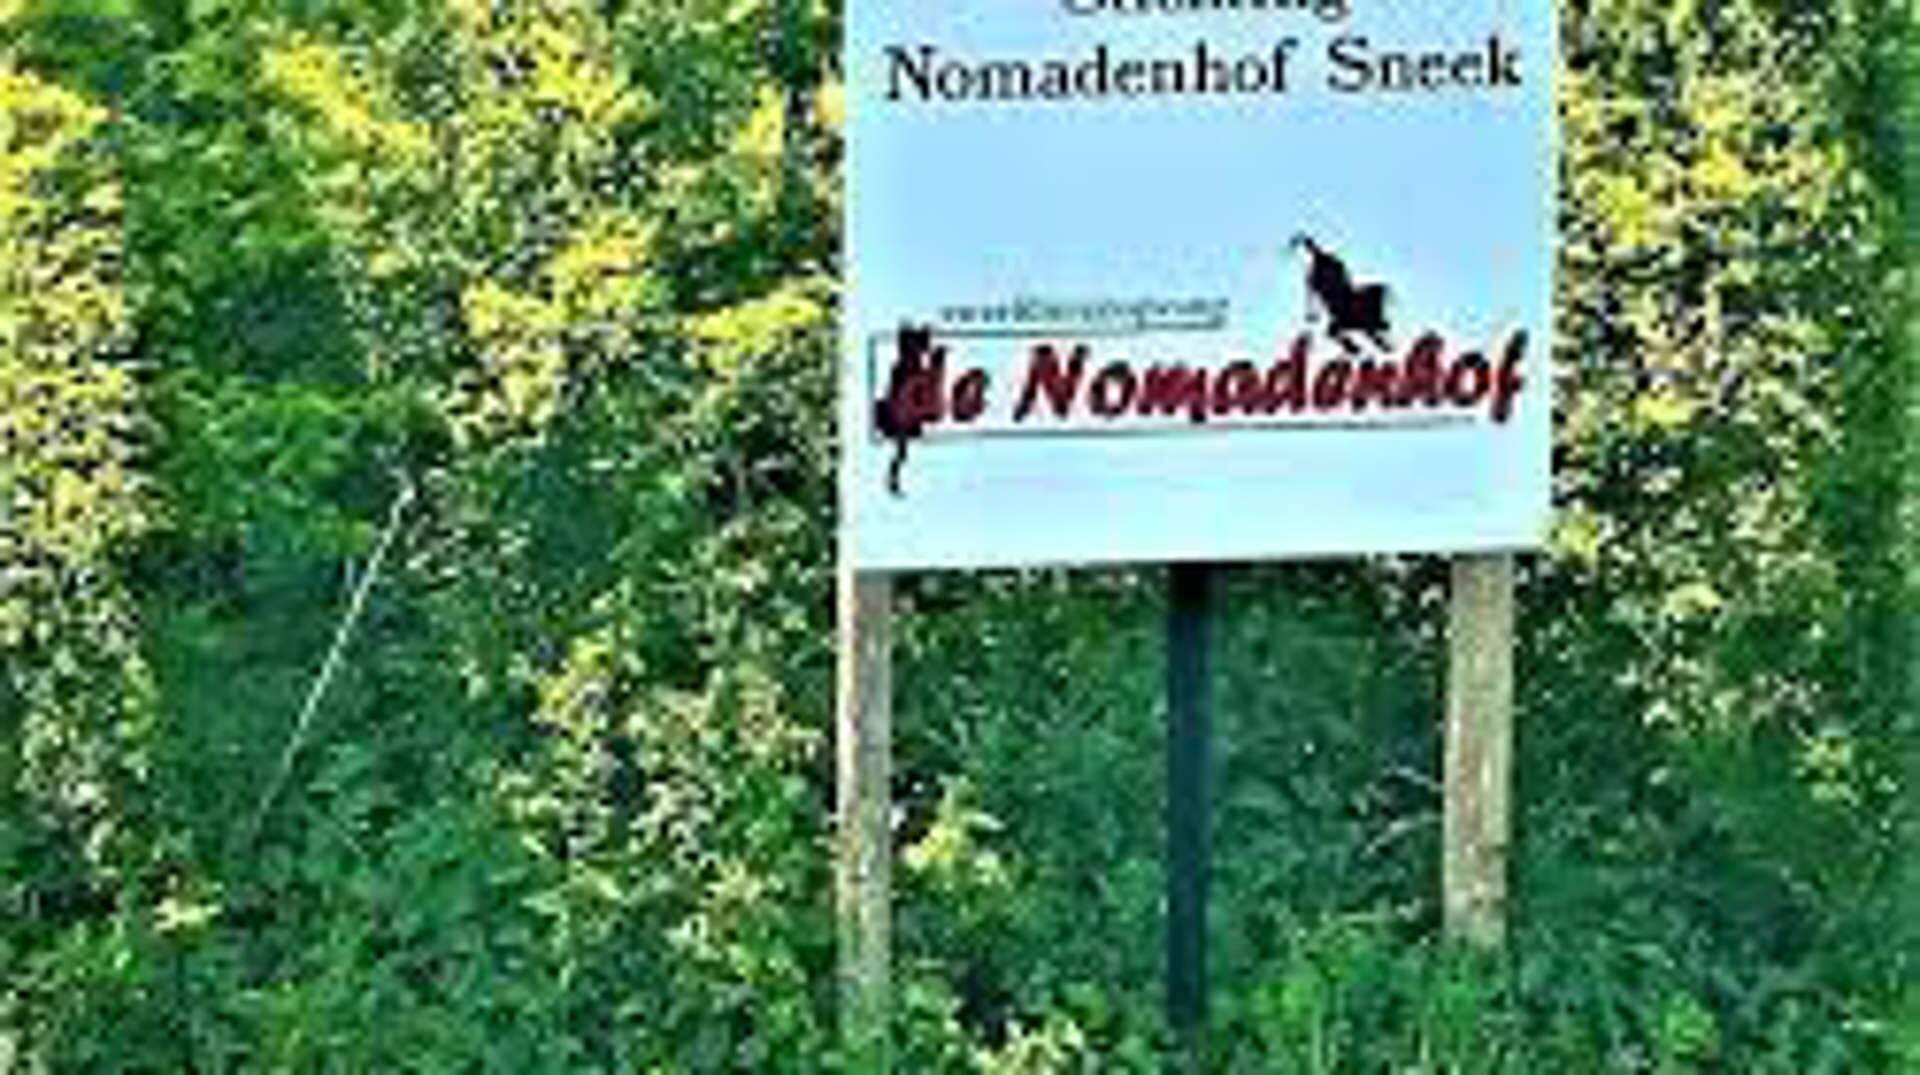 Stichting Nomadenhof Sneek